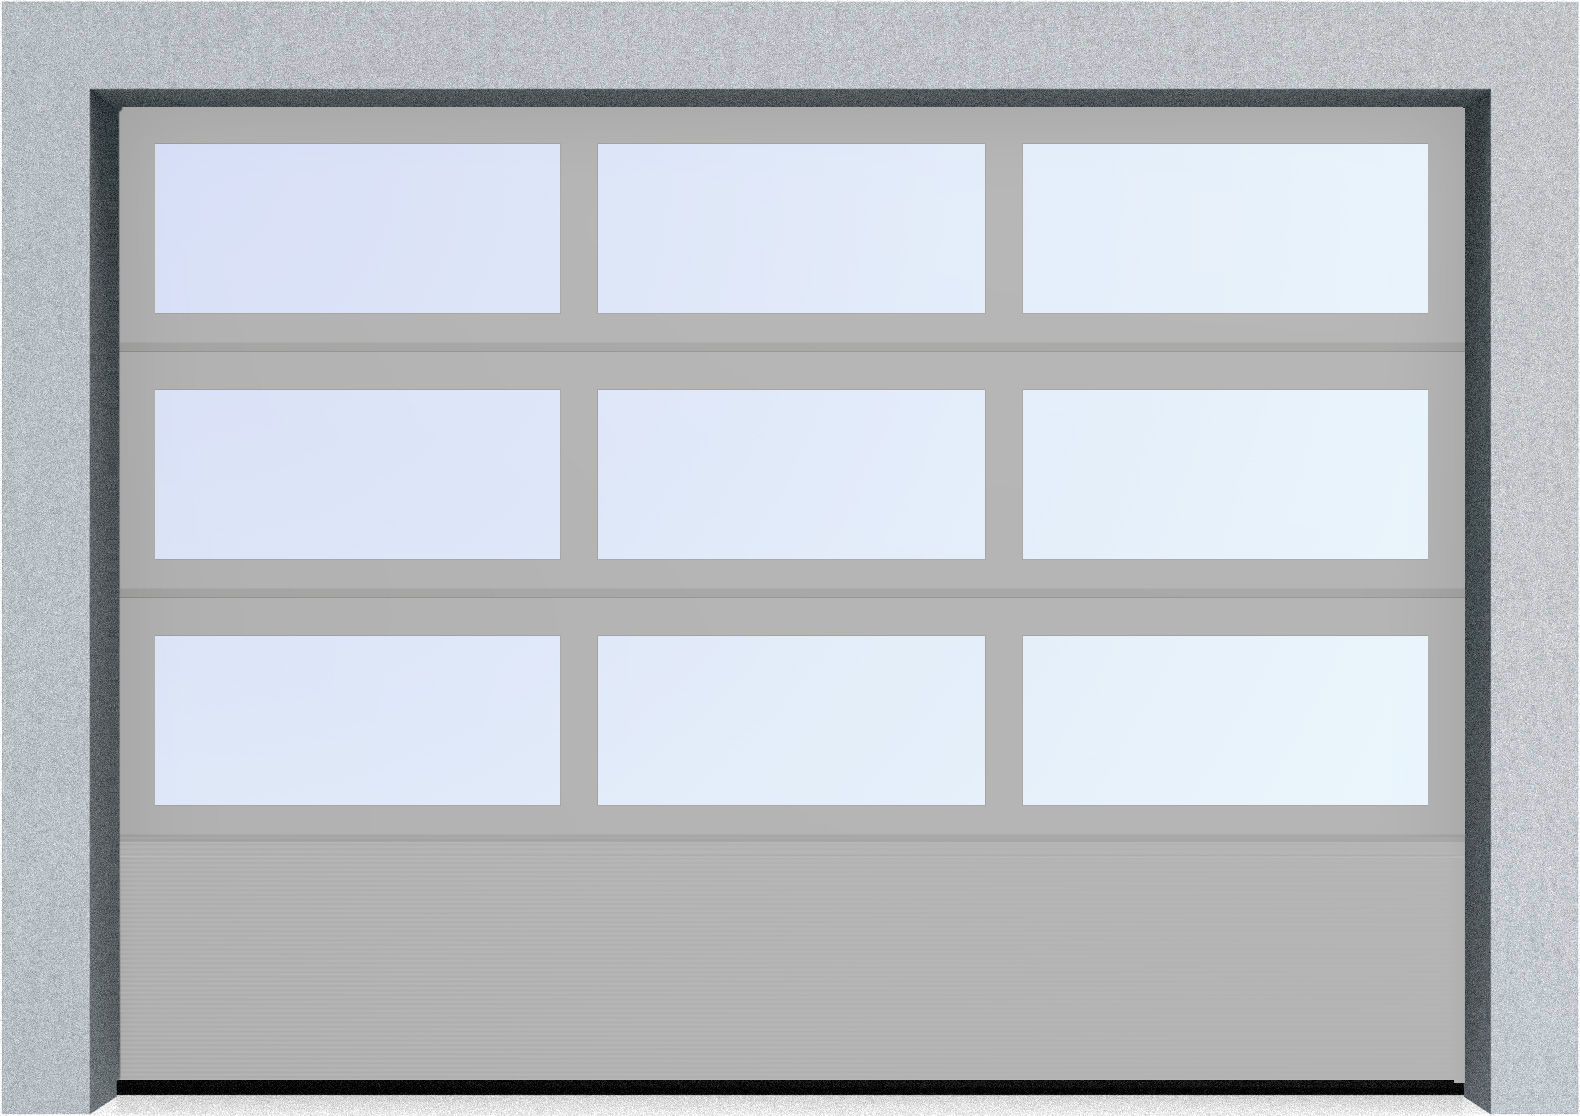  Автоматические секционные панорамные ворота серии AluTrend с комбинированным типом полотна (АЛПС) 3000х4500 S-гофр, Микроволна стандартные цвета, фото 17 